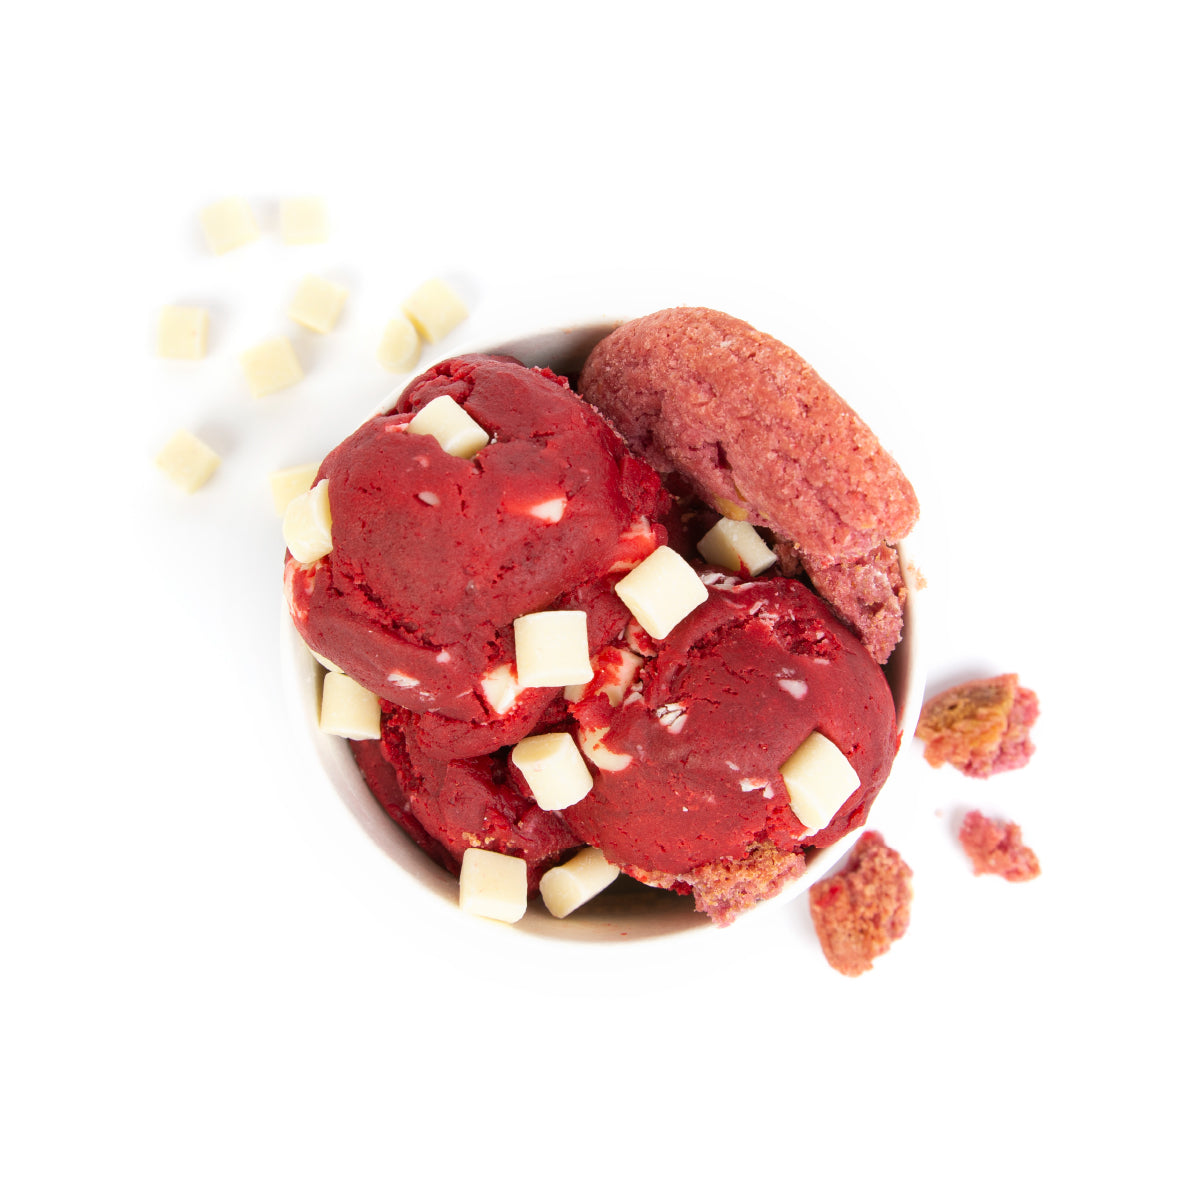 Cookie dough Red velvet